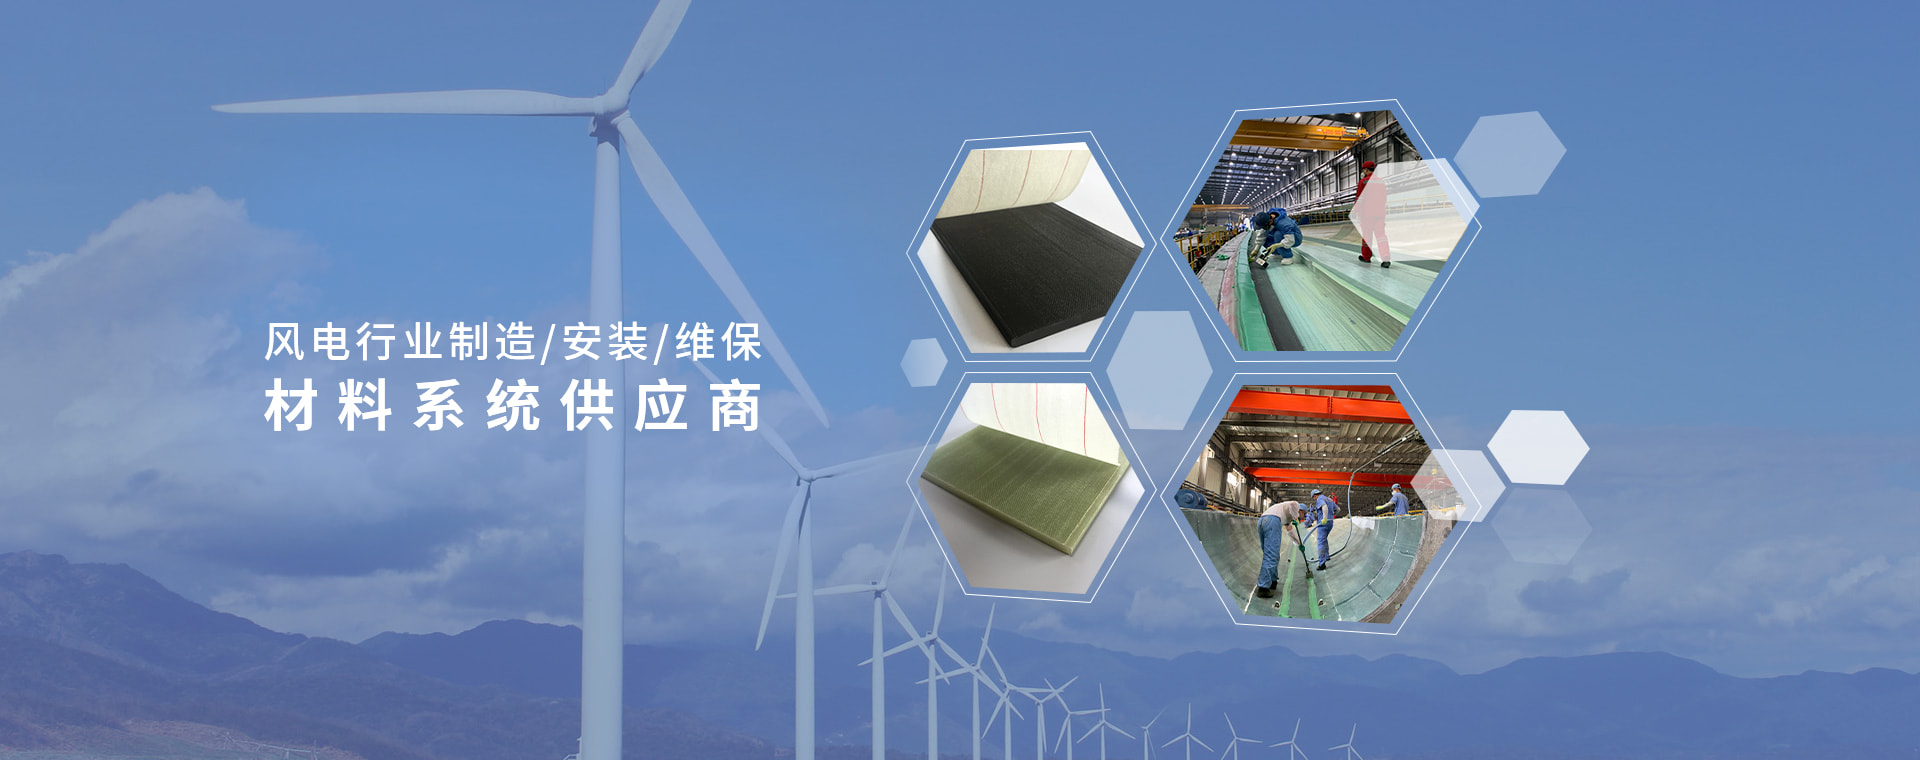 风电行业制造/安装/维保材料系统供应商